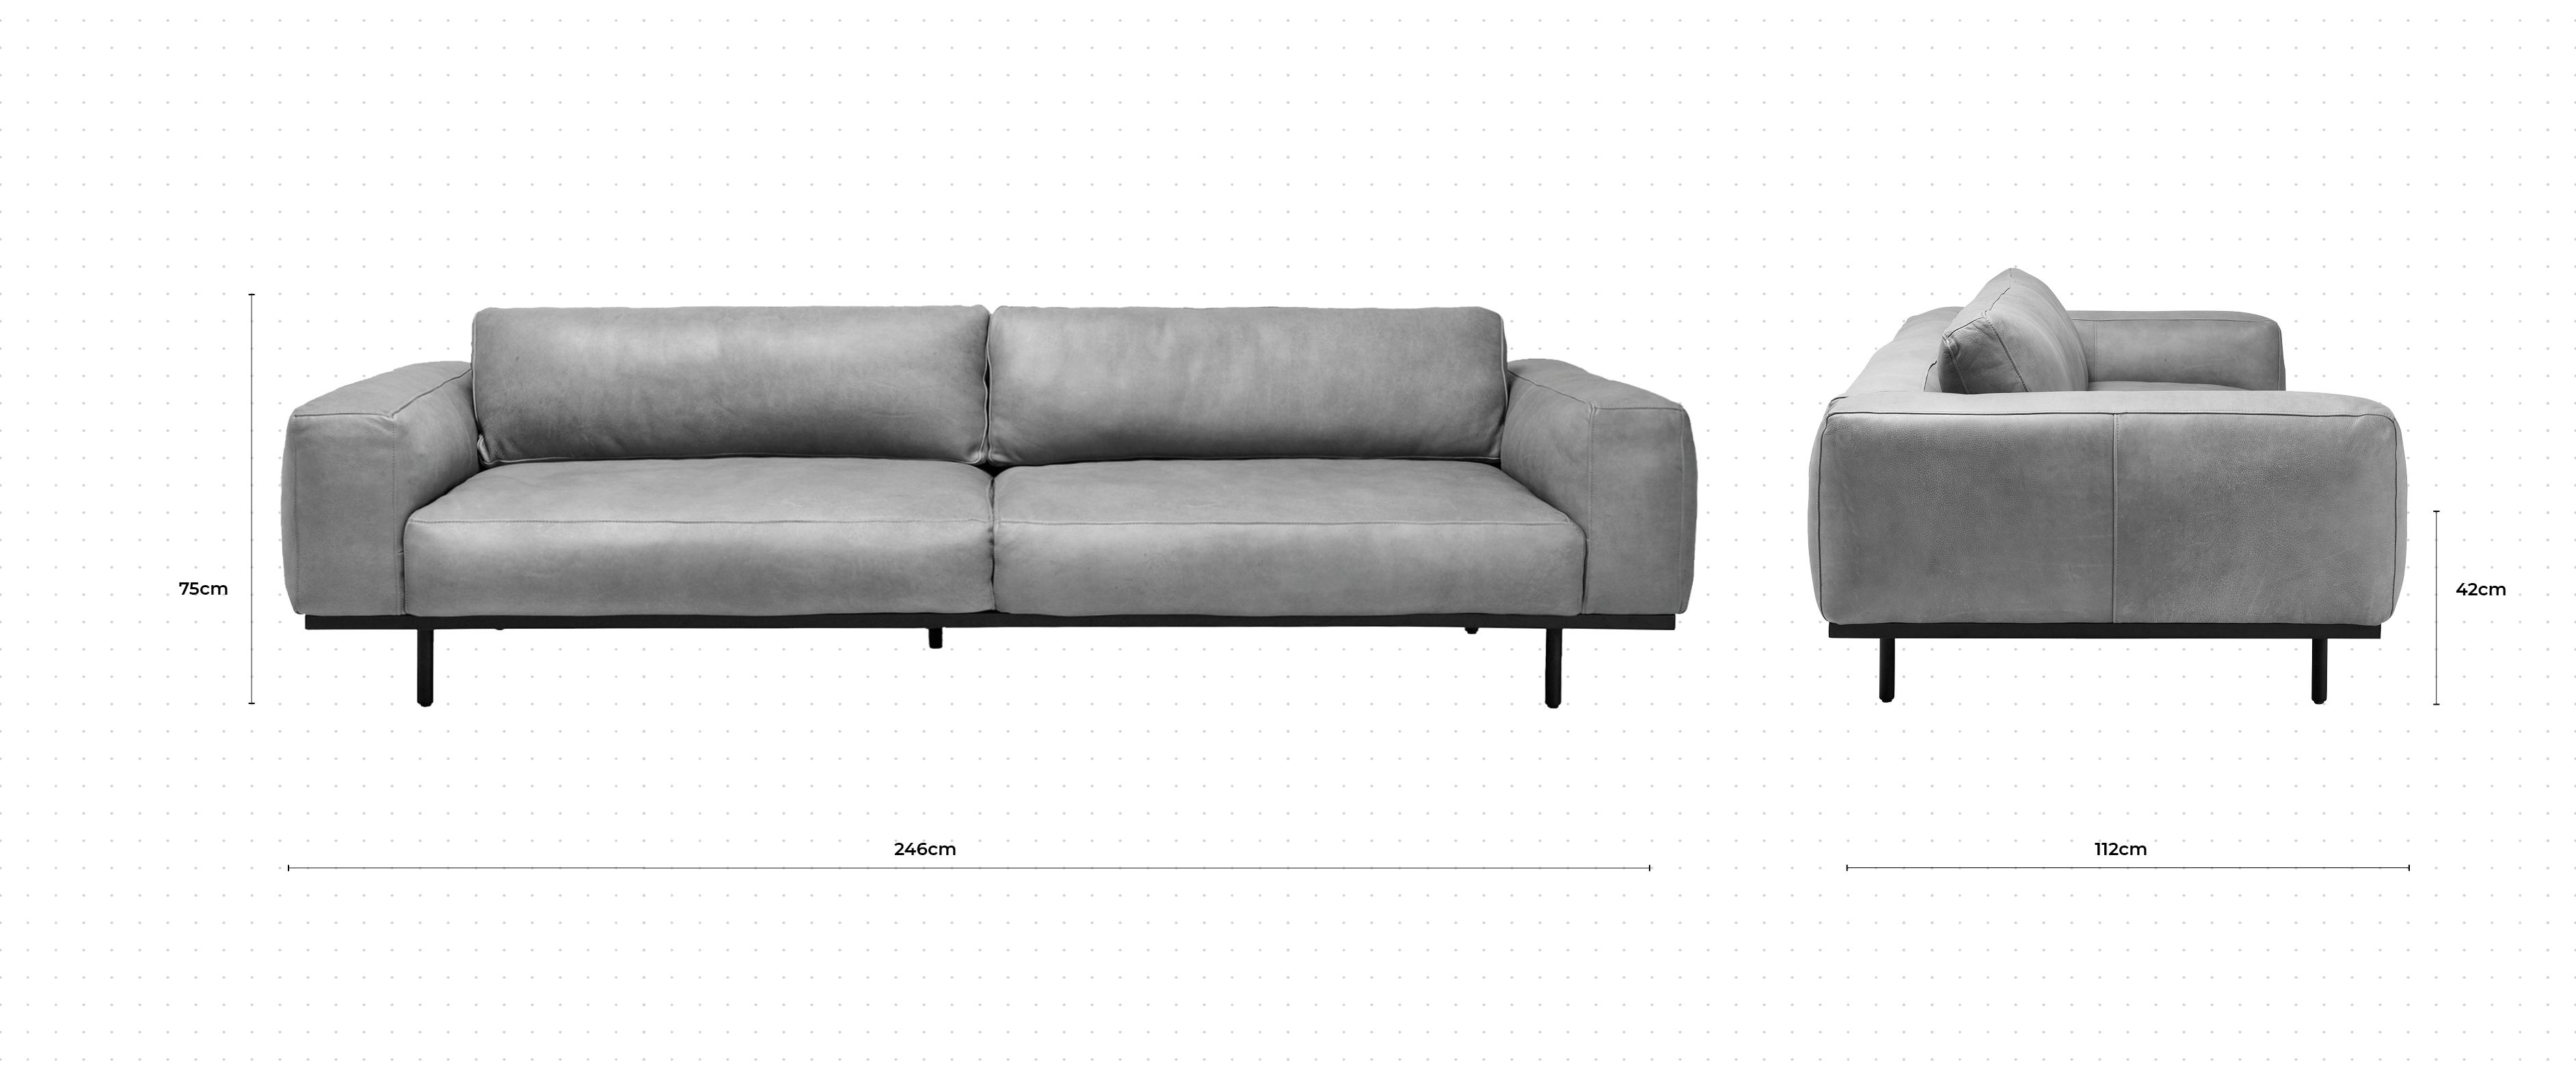 Nougat 3 Seater Sofa dimensions